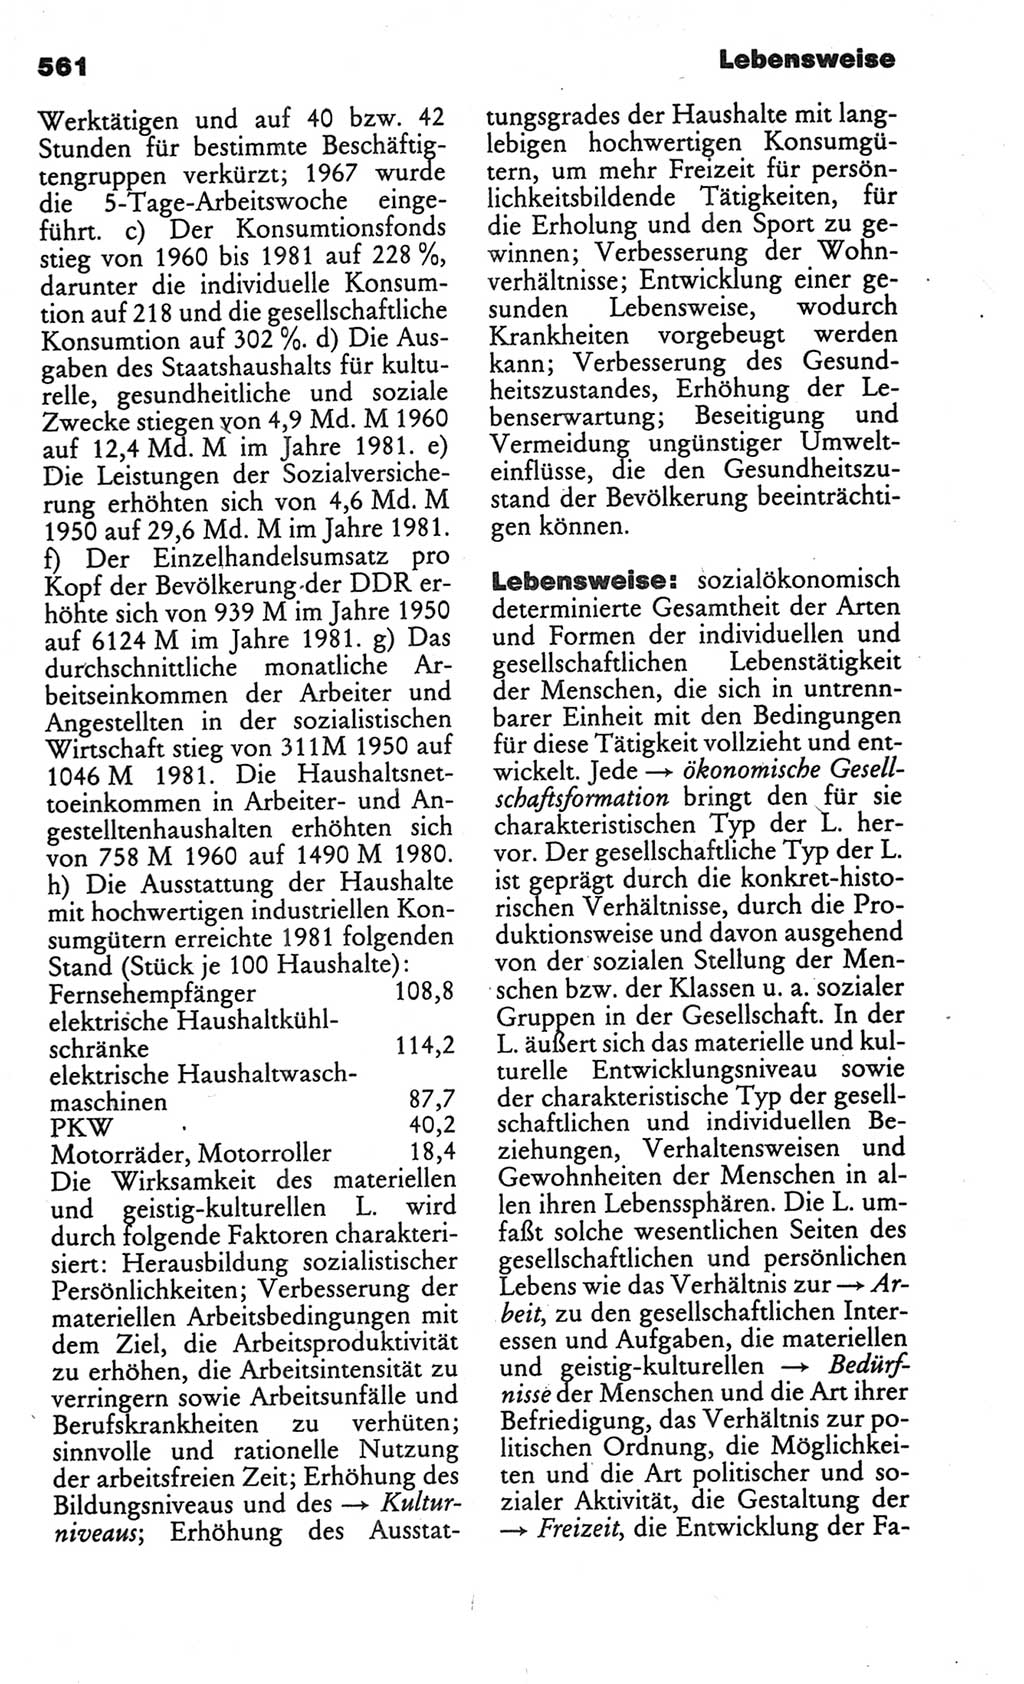 Kleines politisches Wörterbuch [Deutsche Demokratische Republik (DDR)] 1986, Seite 561 (Kl. pol. Wb. DDR 1986, S. 561)